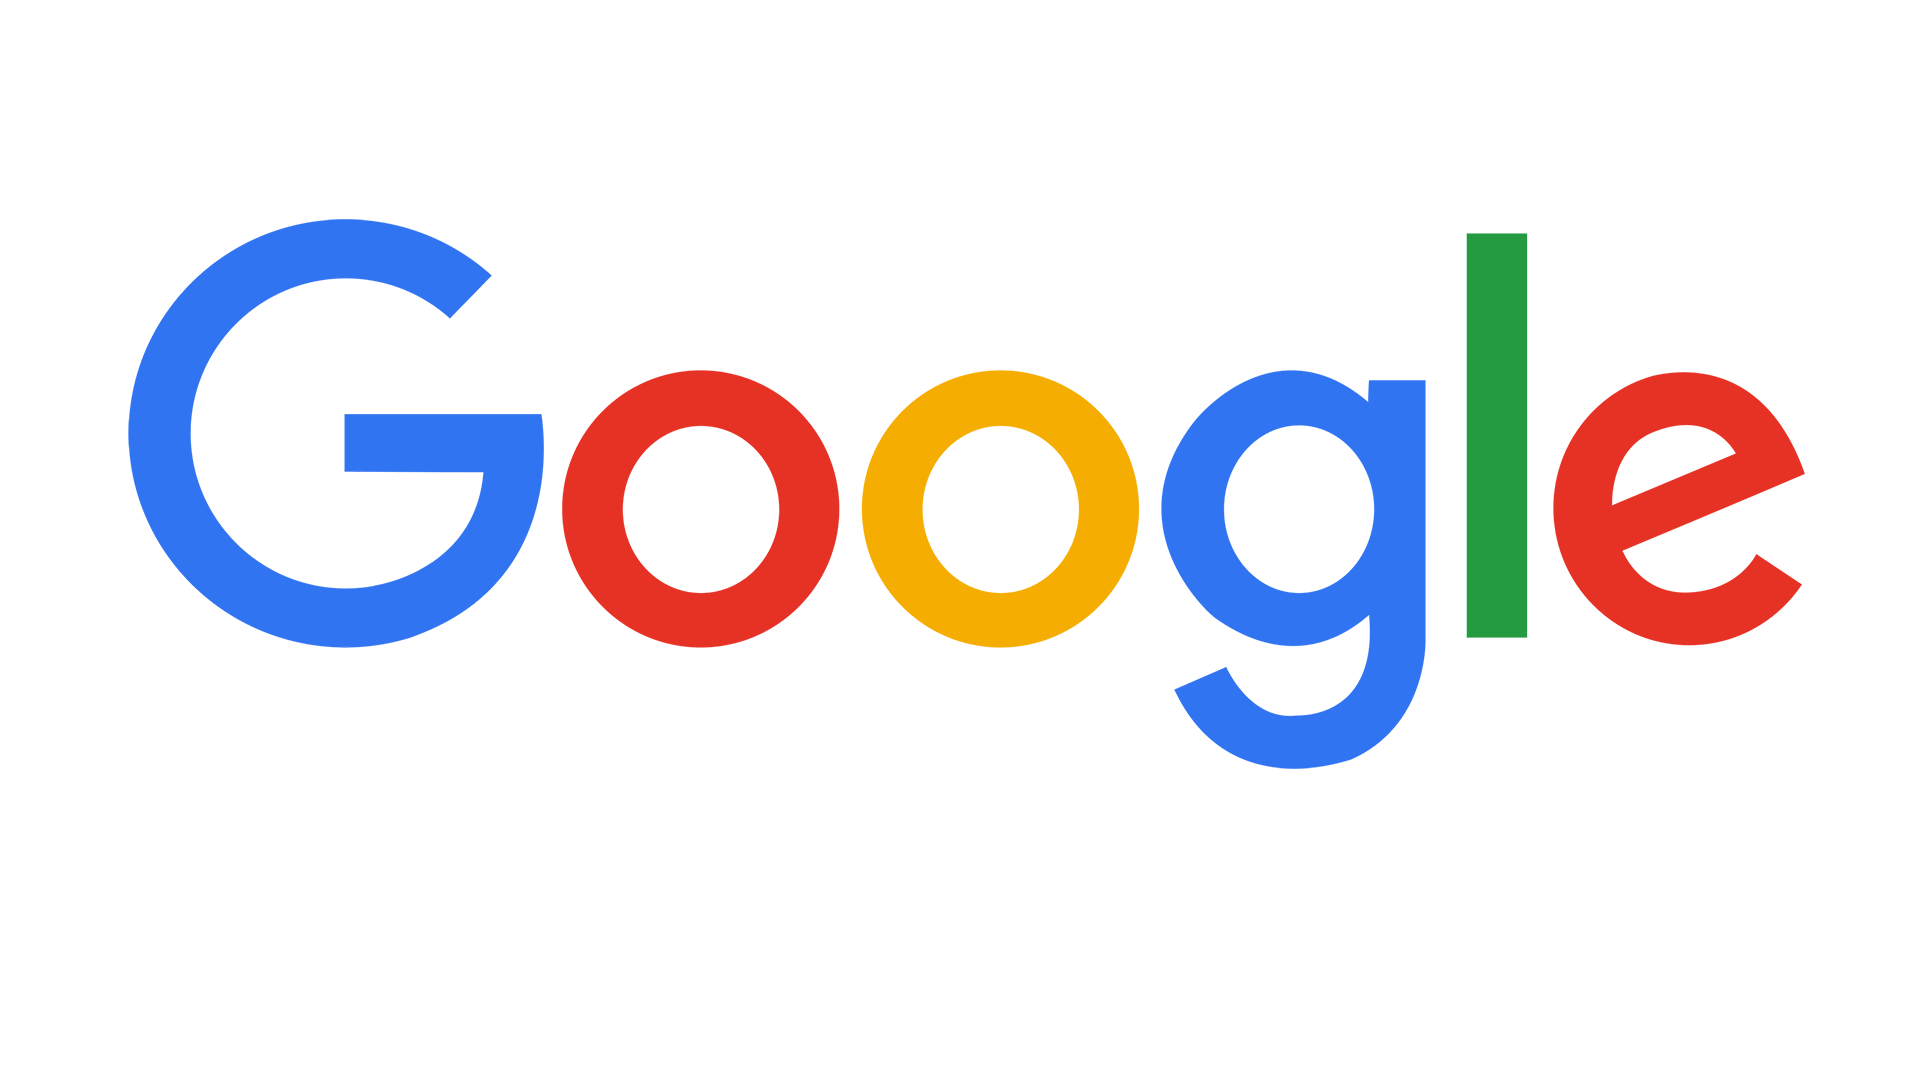 Google ทุ่ม 3.3 หมื่นล้านบาทเพื่อเปลี่ยนแปลงทางดิจิทัลให้กับแอฟริกา